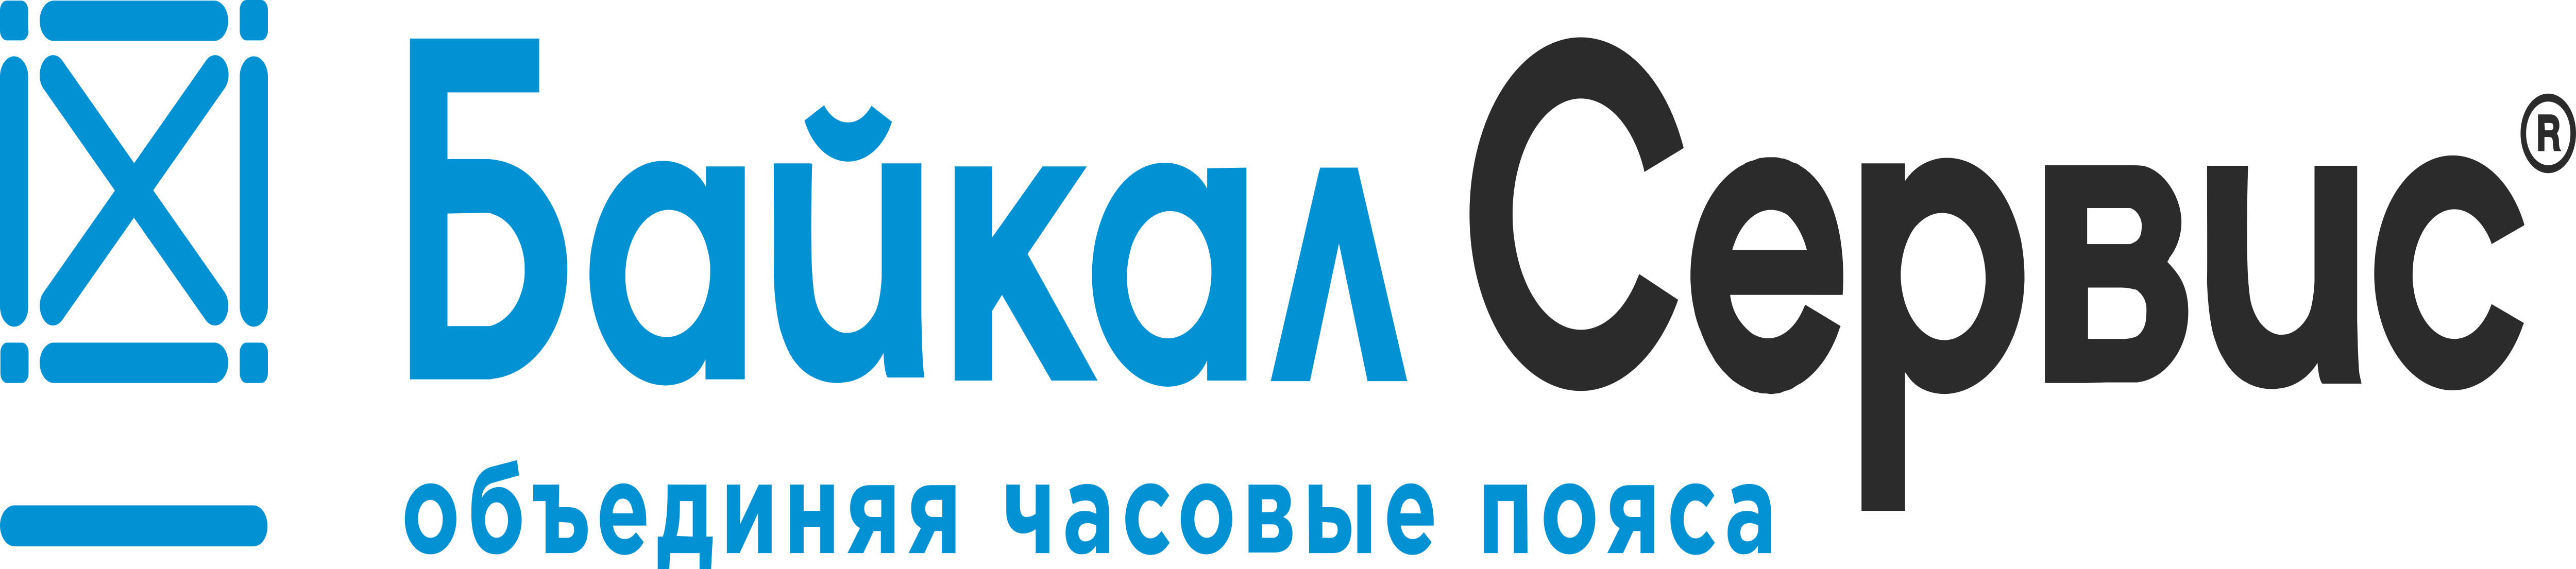 Ооо тк байкал. Байкал сервис. ТК Байкал сервис. Байкал сервис лого. Логотип компании Байкал сервис.